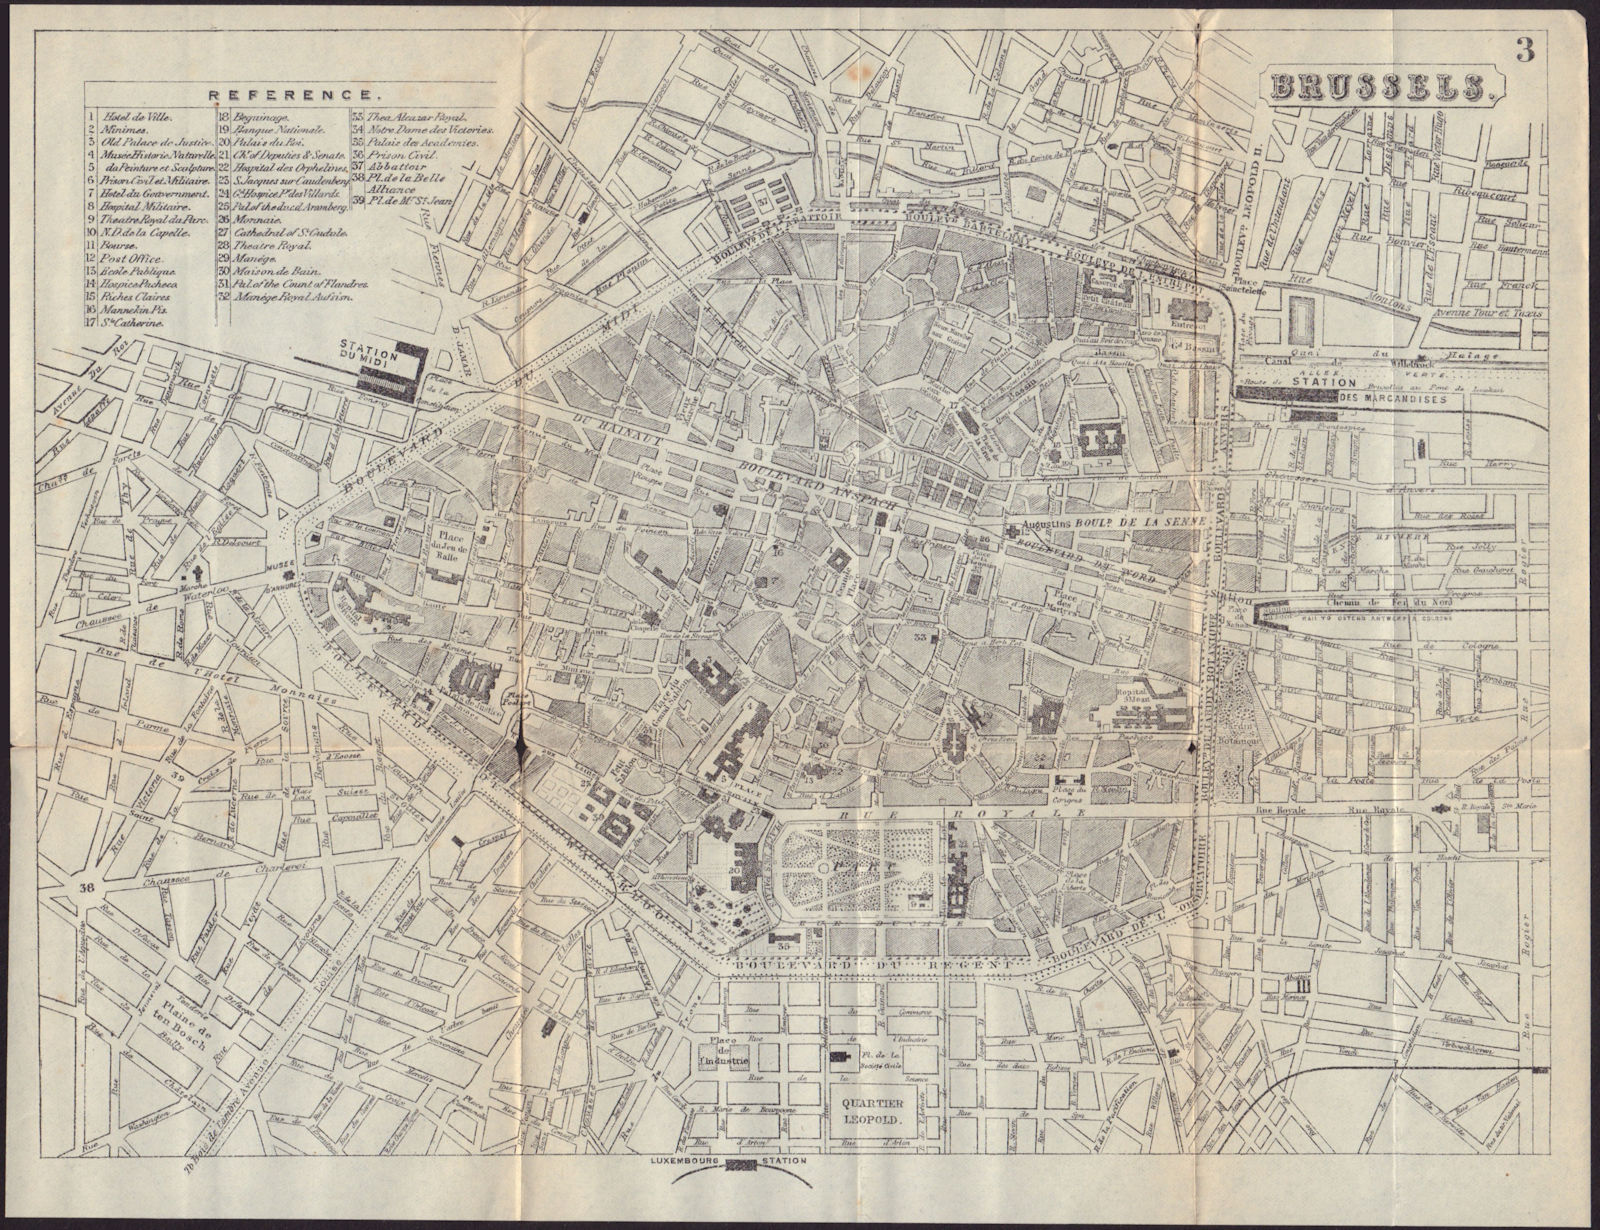 BRUSSELS BRUSSEL BRUXELLES antique town plan city map. Belgium. BRADSHAW 1892